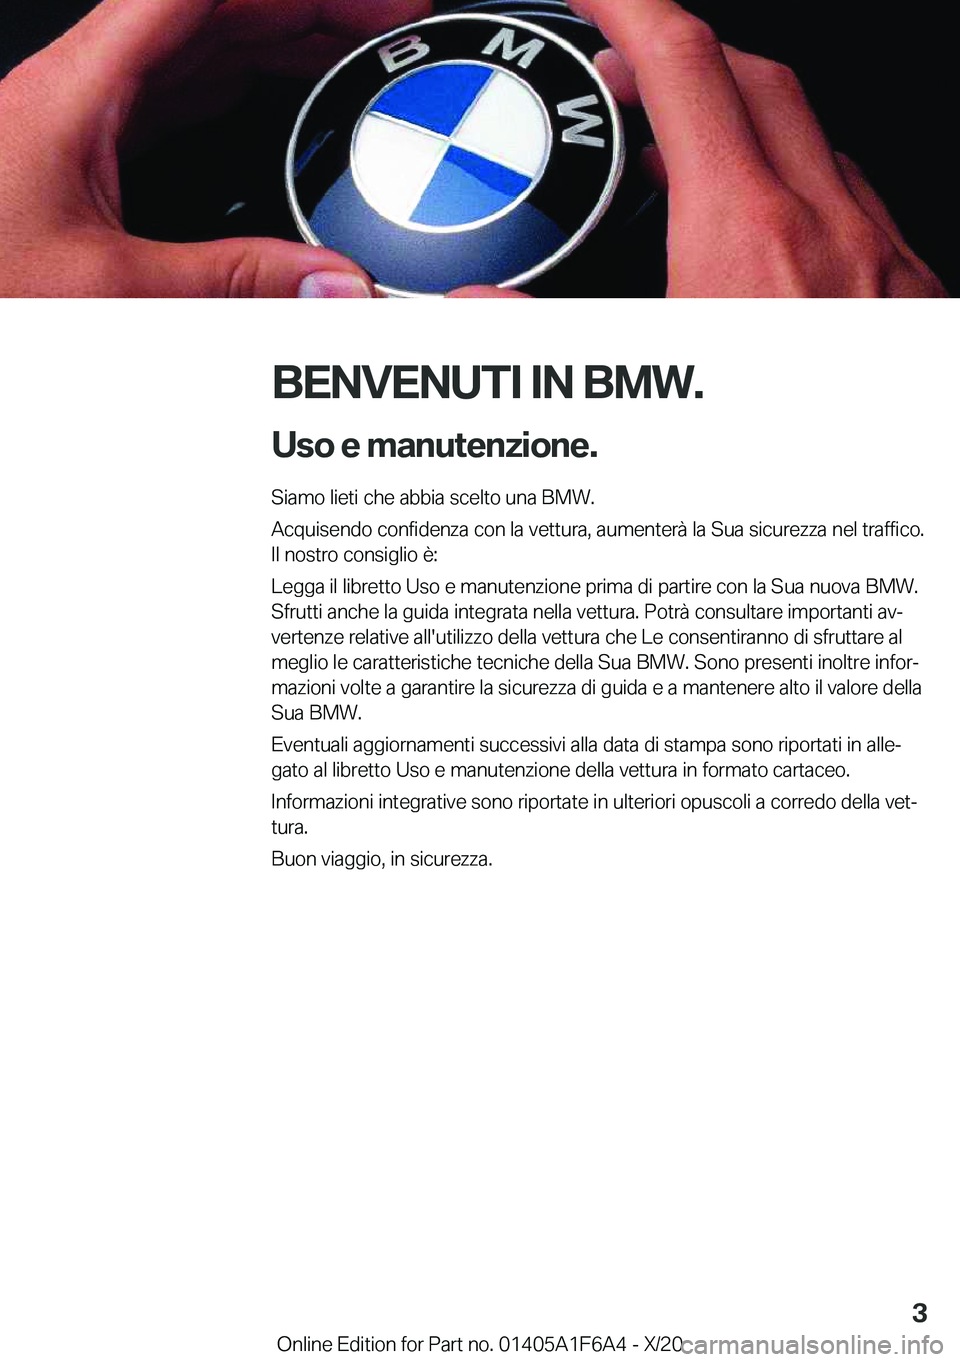 BMW X4 2021  Libretti Di Uso E manutenzione (in Italian) �B�E�N�V�E�N�U�T�I��I�N��B�M�W�.�U�s�o��e��m�a�n�u�t�e�n�z�i�o�n�e�.
�S�i�a�m�o��l�i�e�t�i��c�h�e��a�b�b�i�a��s�c�e�l�t�o��u�n�a��B�M�W�.
�A�c�q�u�i�s�e�n�d�o��c�o�n�f�i�d�e�n�z�a��c�o�n�